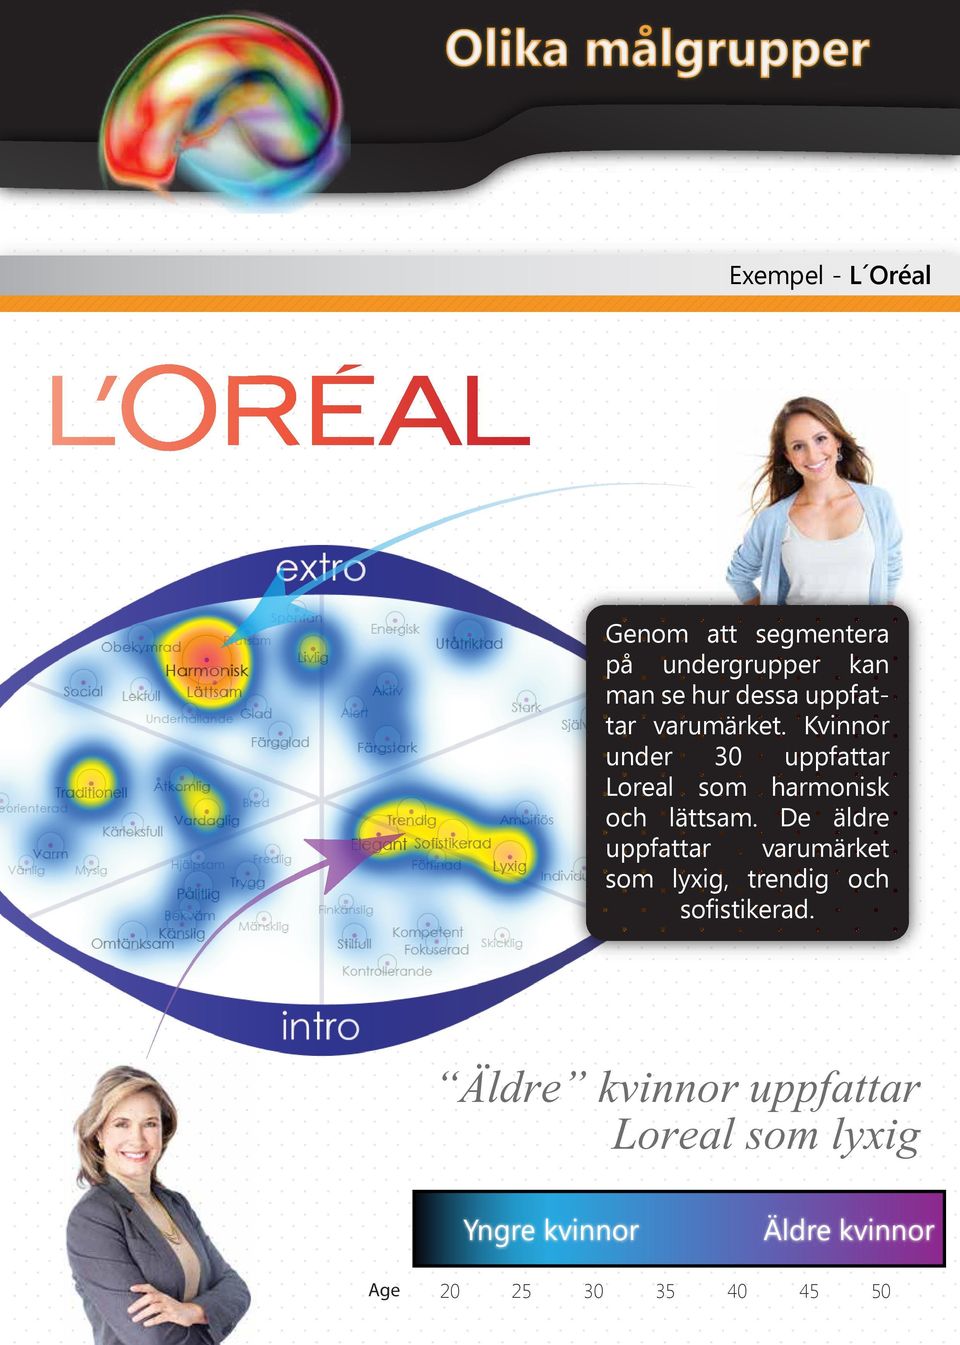 Kvinnor under 30 uppfattar Loreal som harmonisk och lättsam.